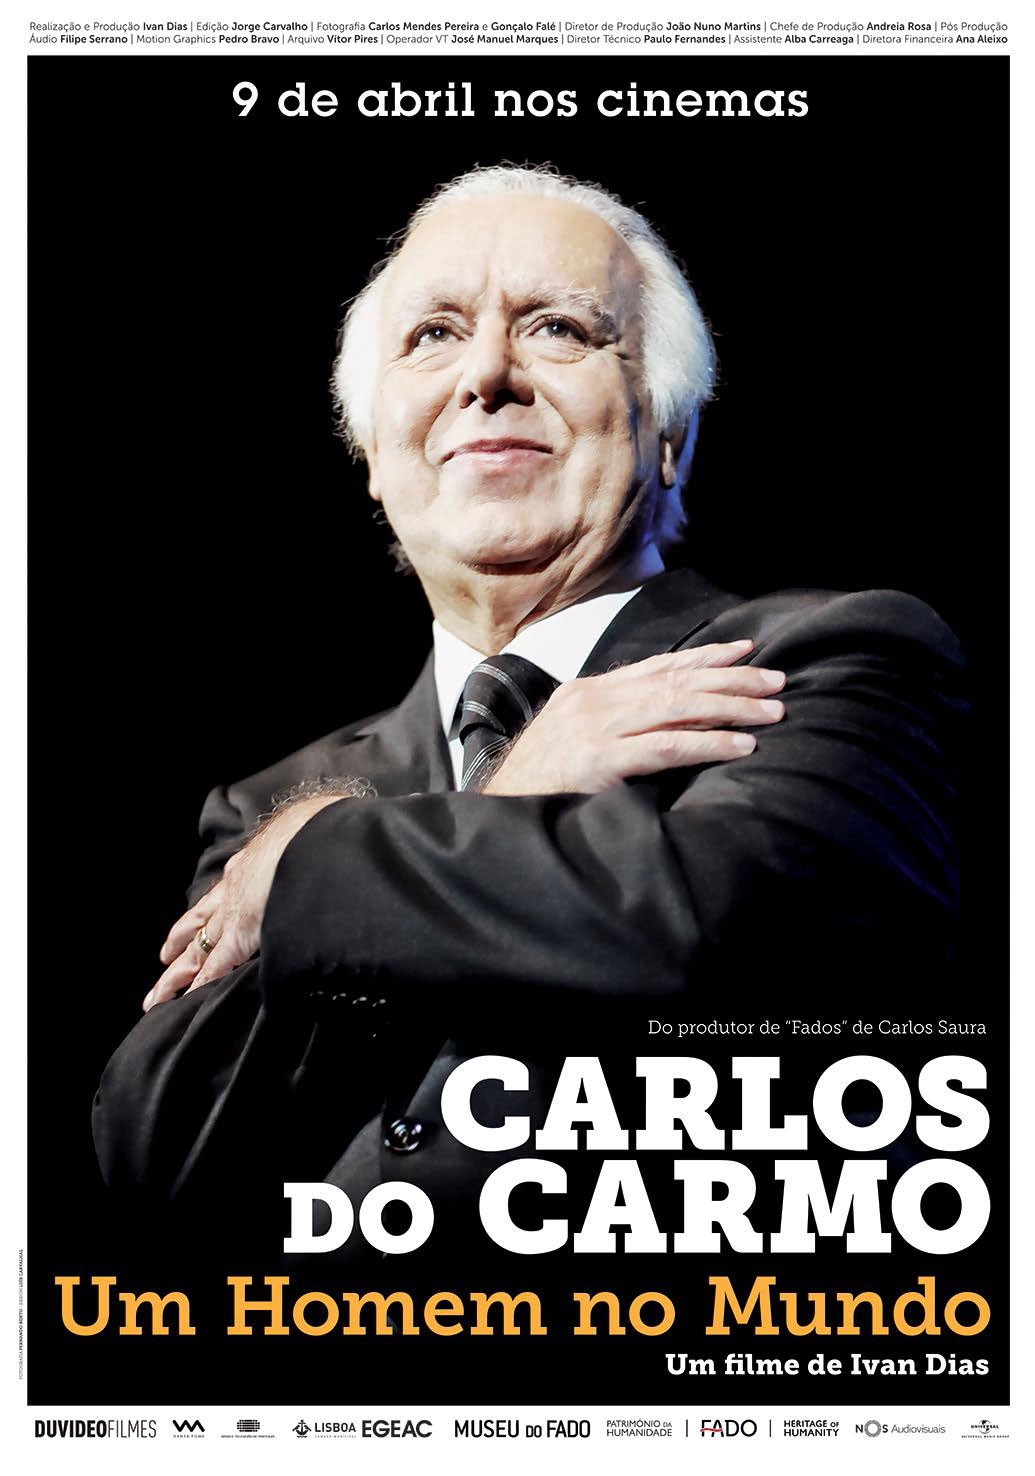 Extra Large Movie Poster Image for Carlos do Carmo: Um Homem no Mundo 